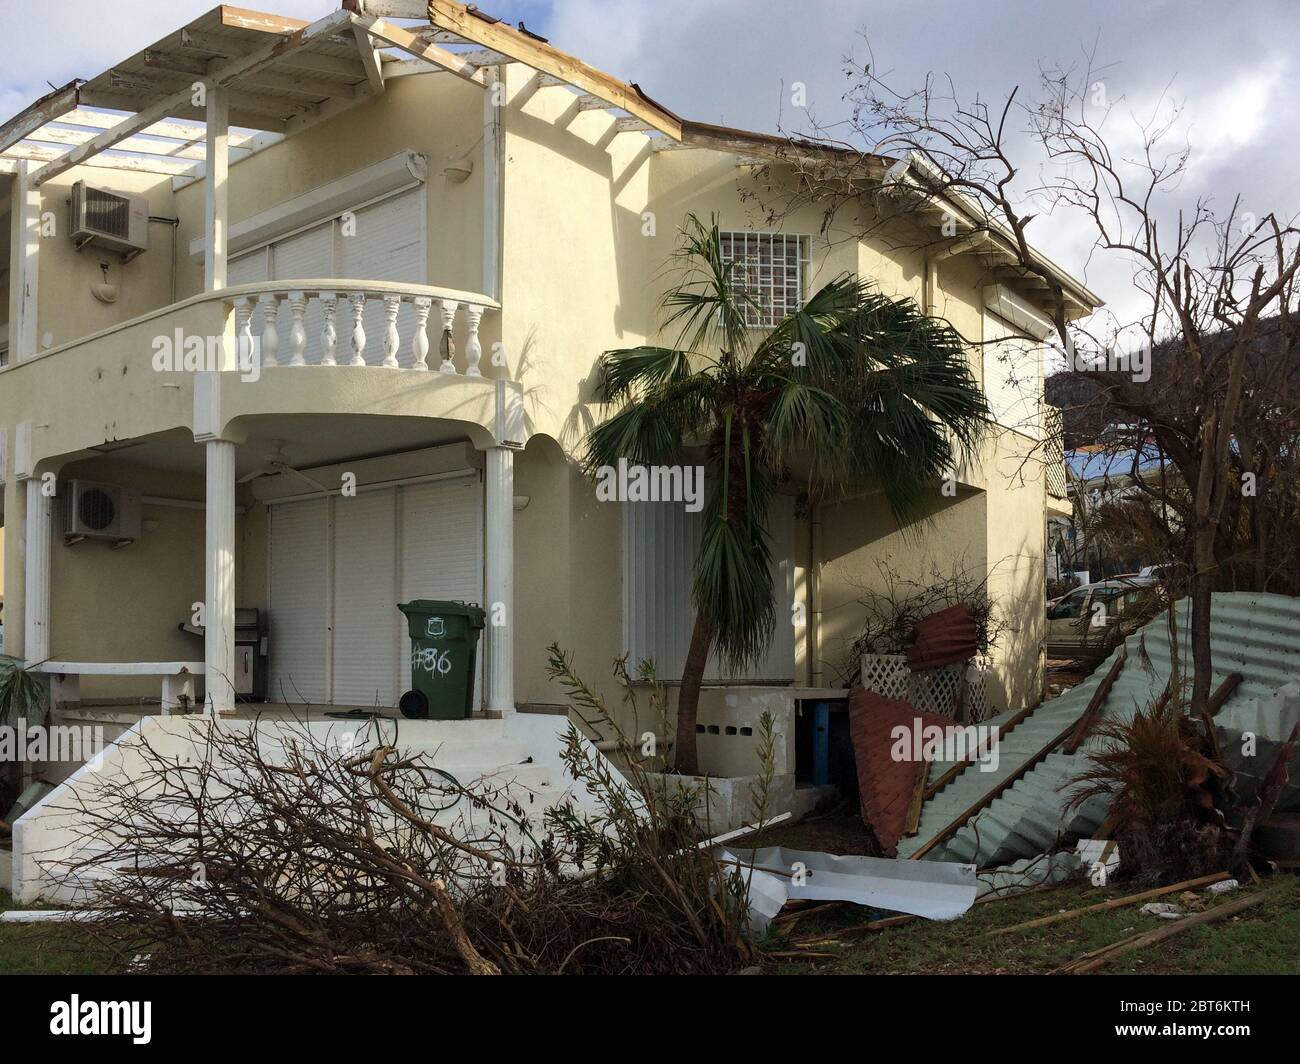 Detriti dopo una tempesta di categoria 5: Mentre gli otturatori sono rimasti, l'uragano Irma ha tolto la maggior parte del tetto di questa casa a Sint Maarten causando danni gravi Foto Stock